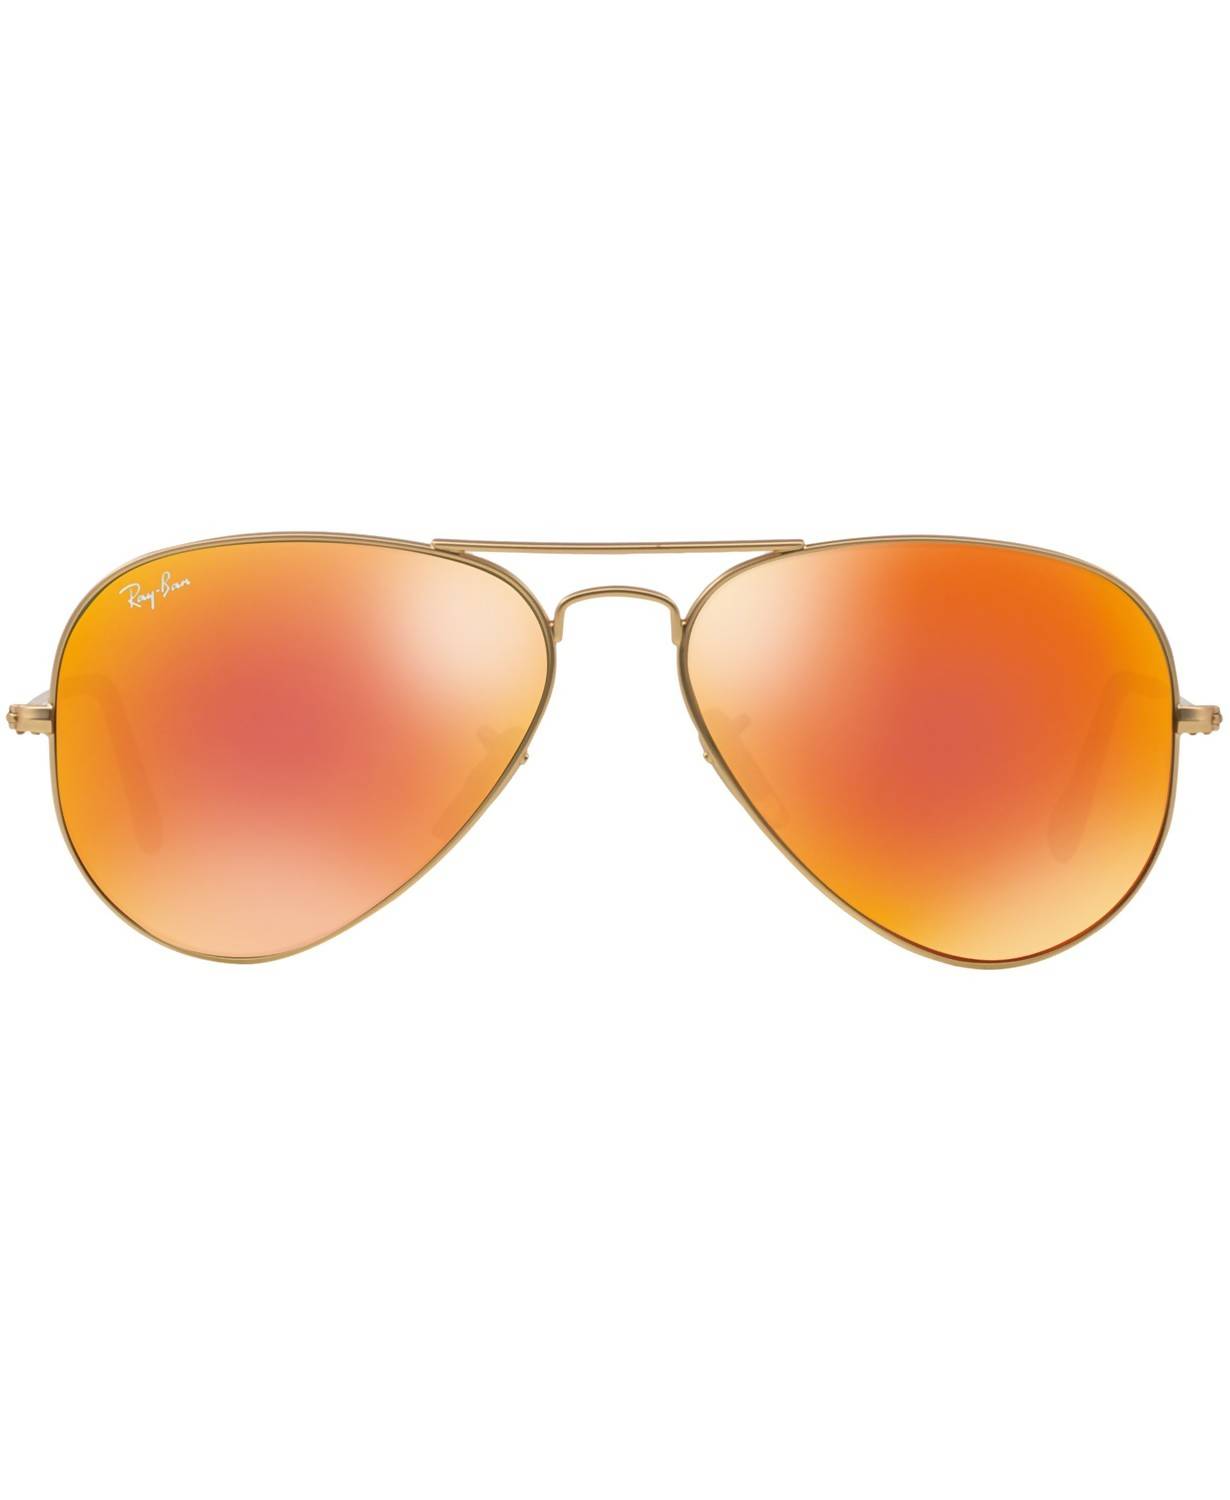 reflector sunglasses ray ban